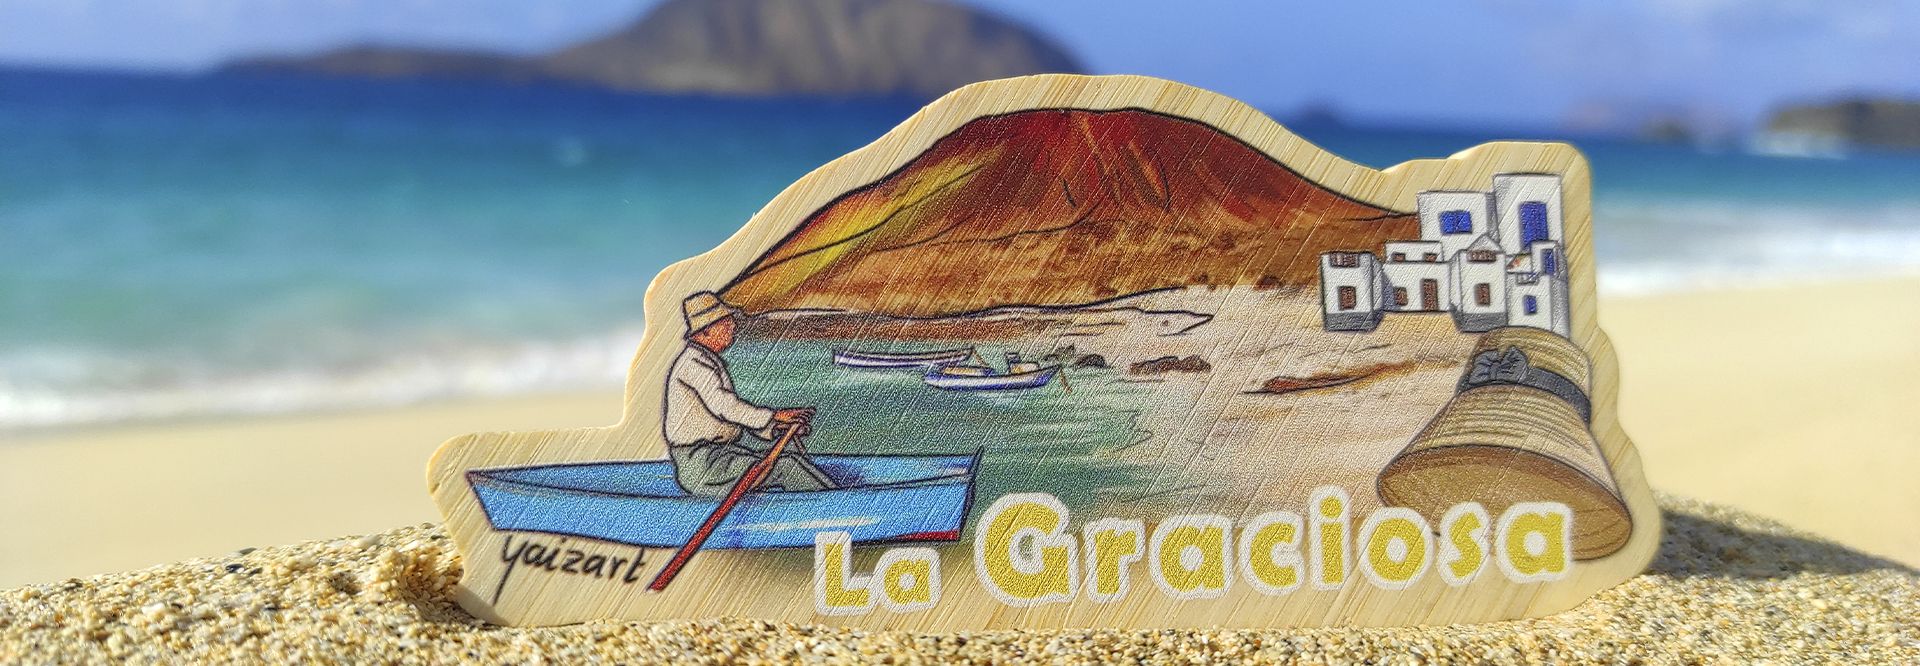 Cómo visitar la Isla de La Graciosa. Guía de turismo y planazos de Lanzarote.